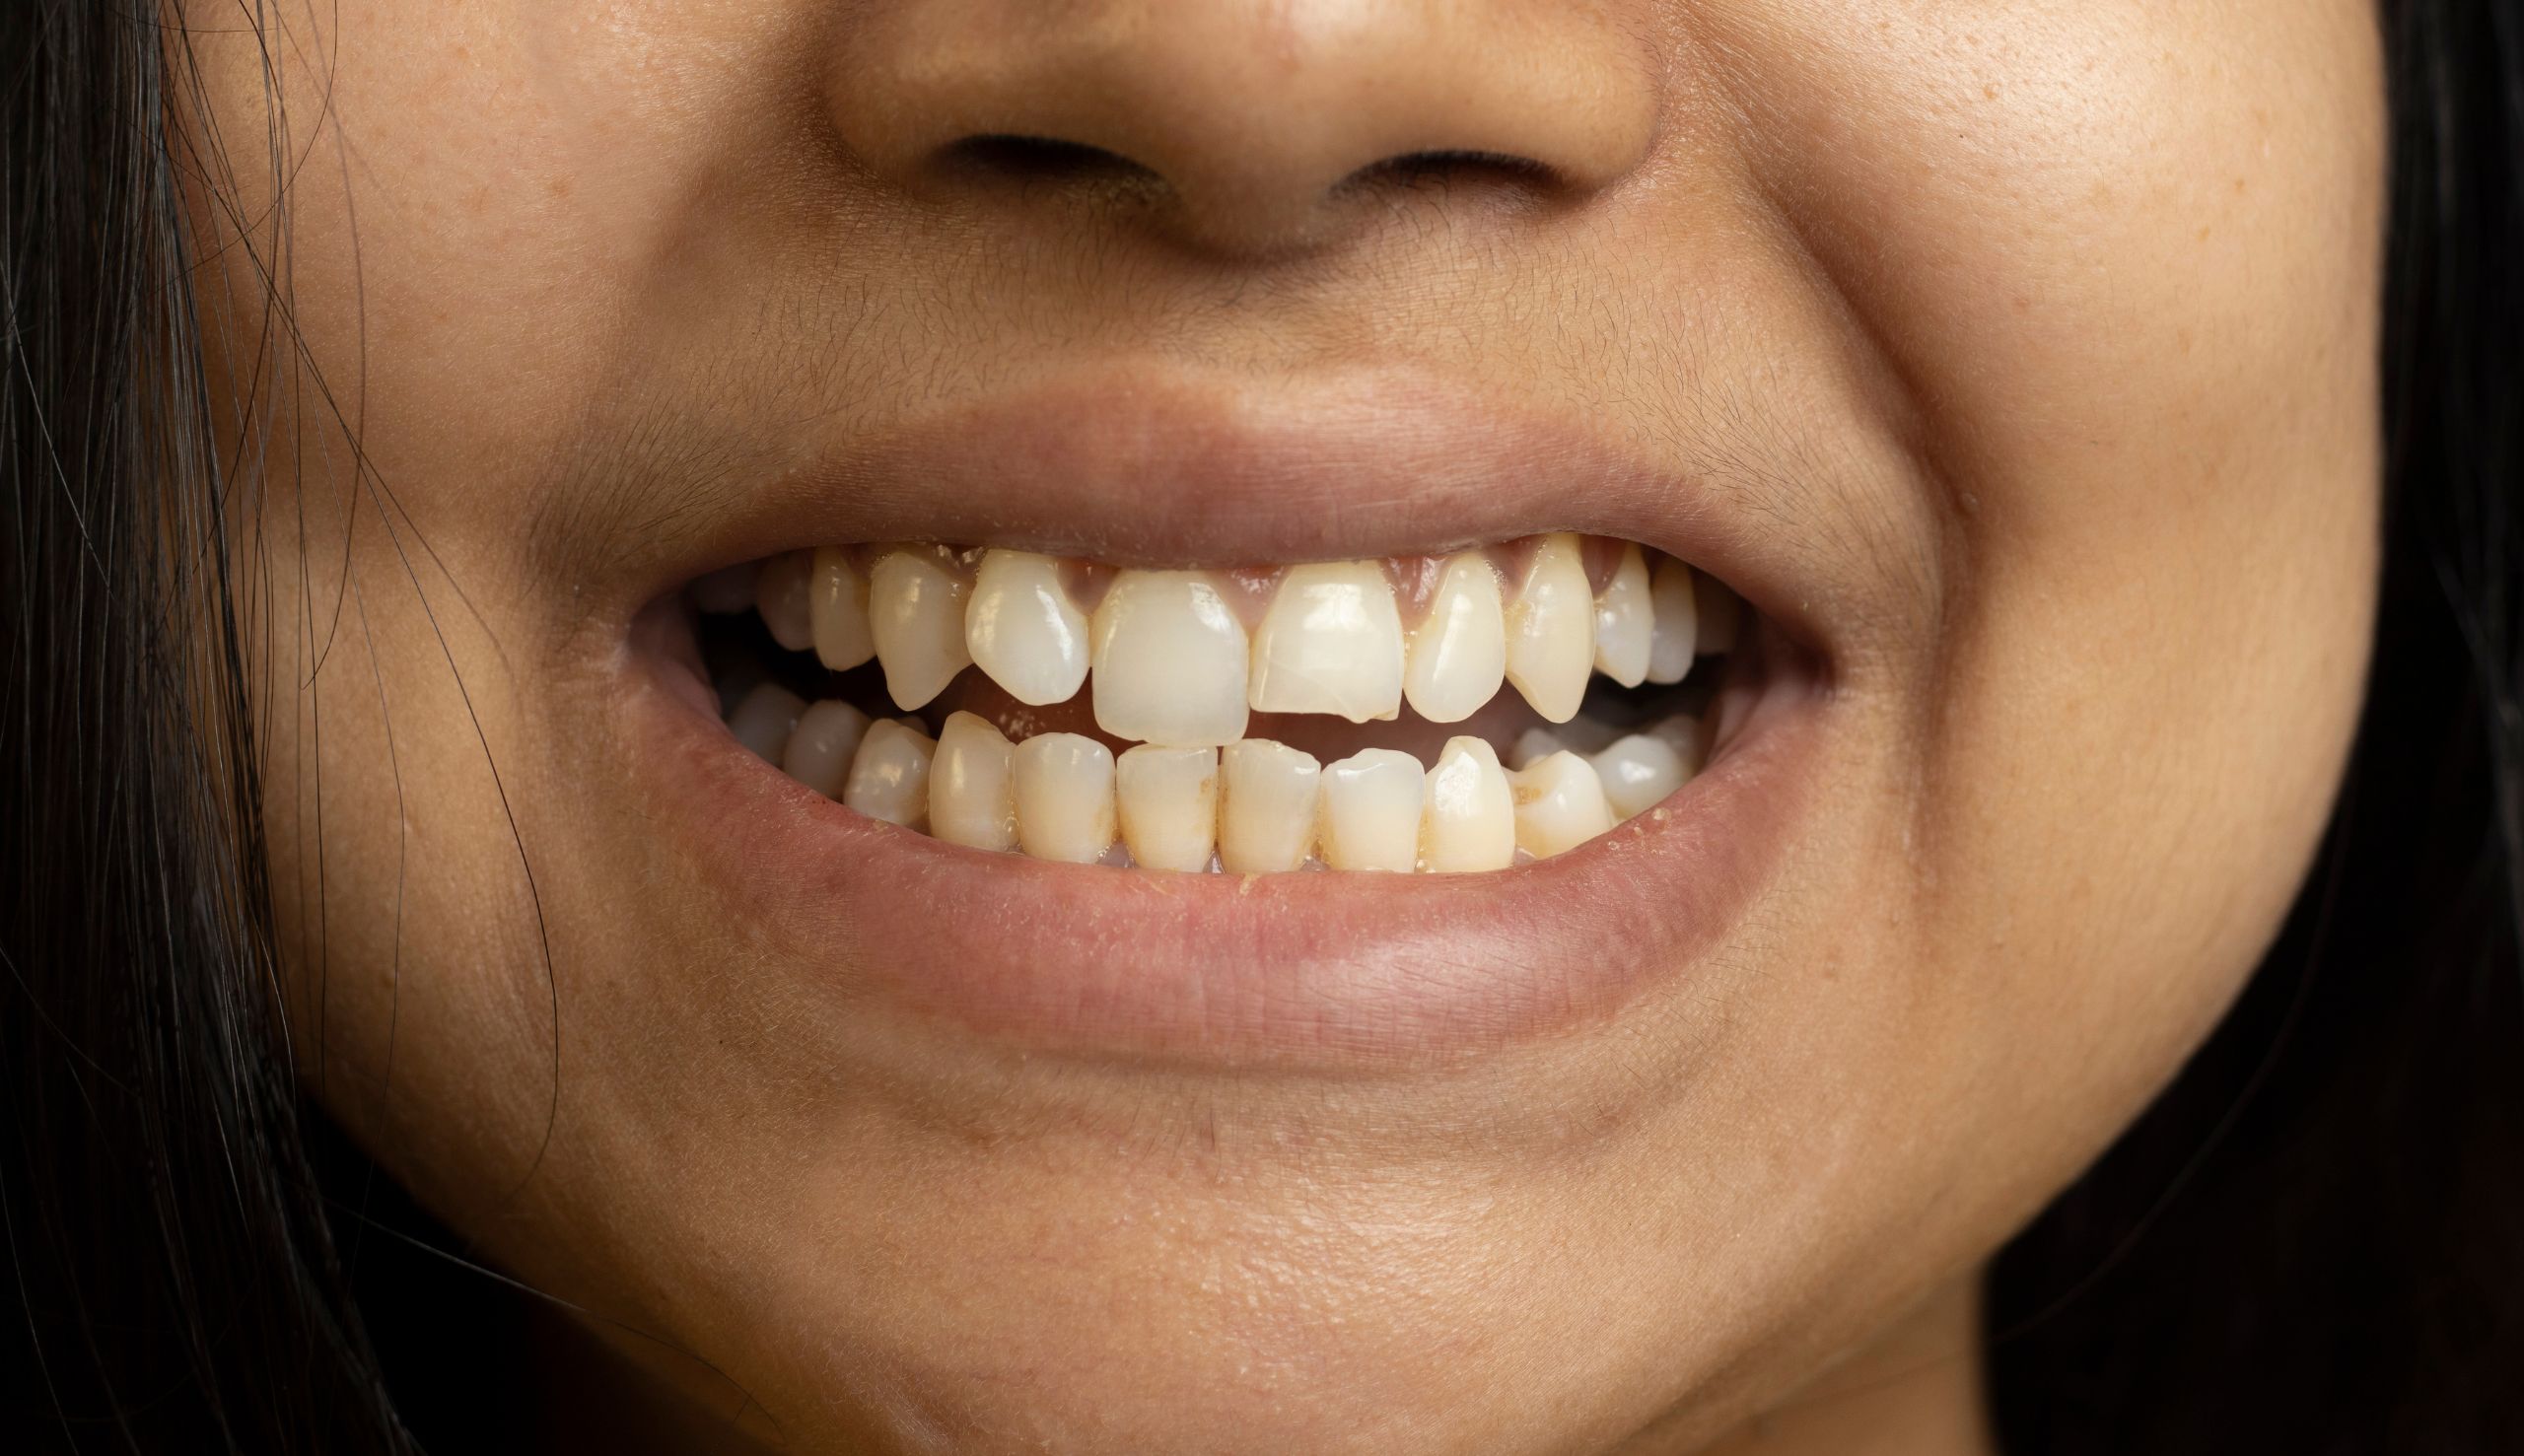 Quels soins pratiques t-on pour réparer une dent cassée ? | Clinique dentaire Sana Oris | Paris